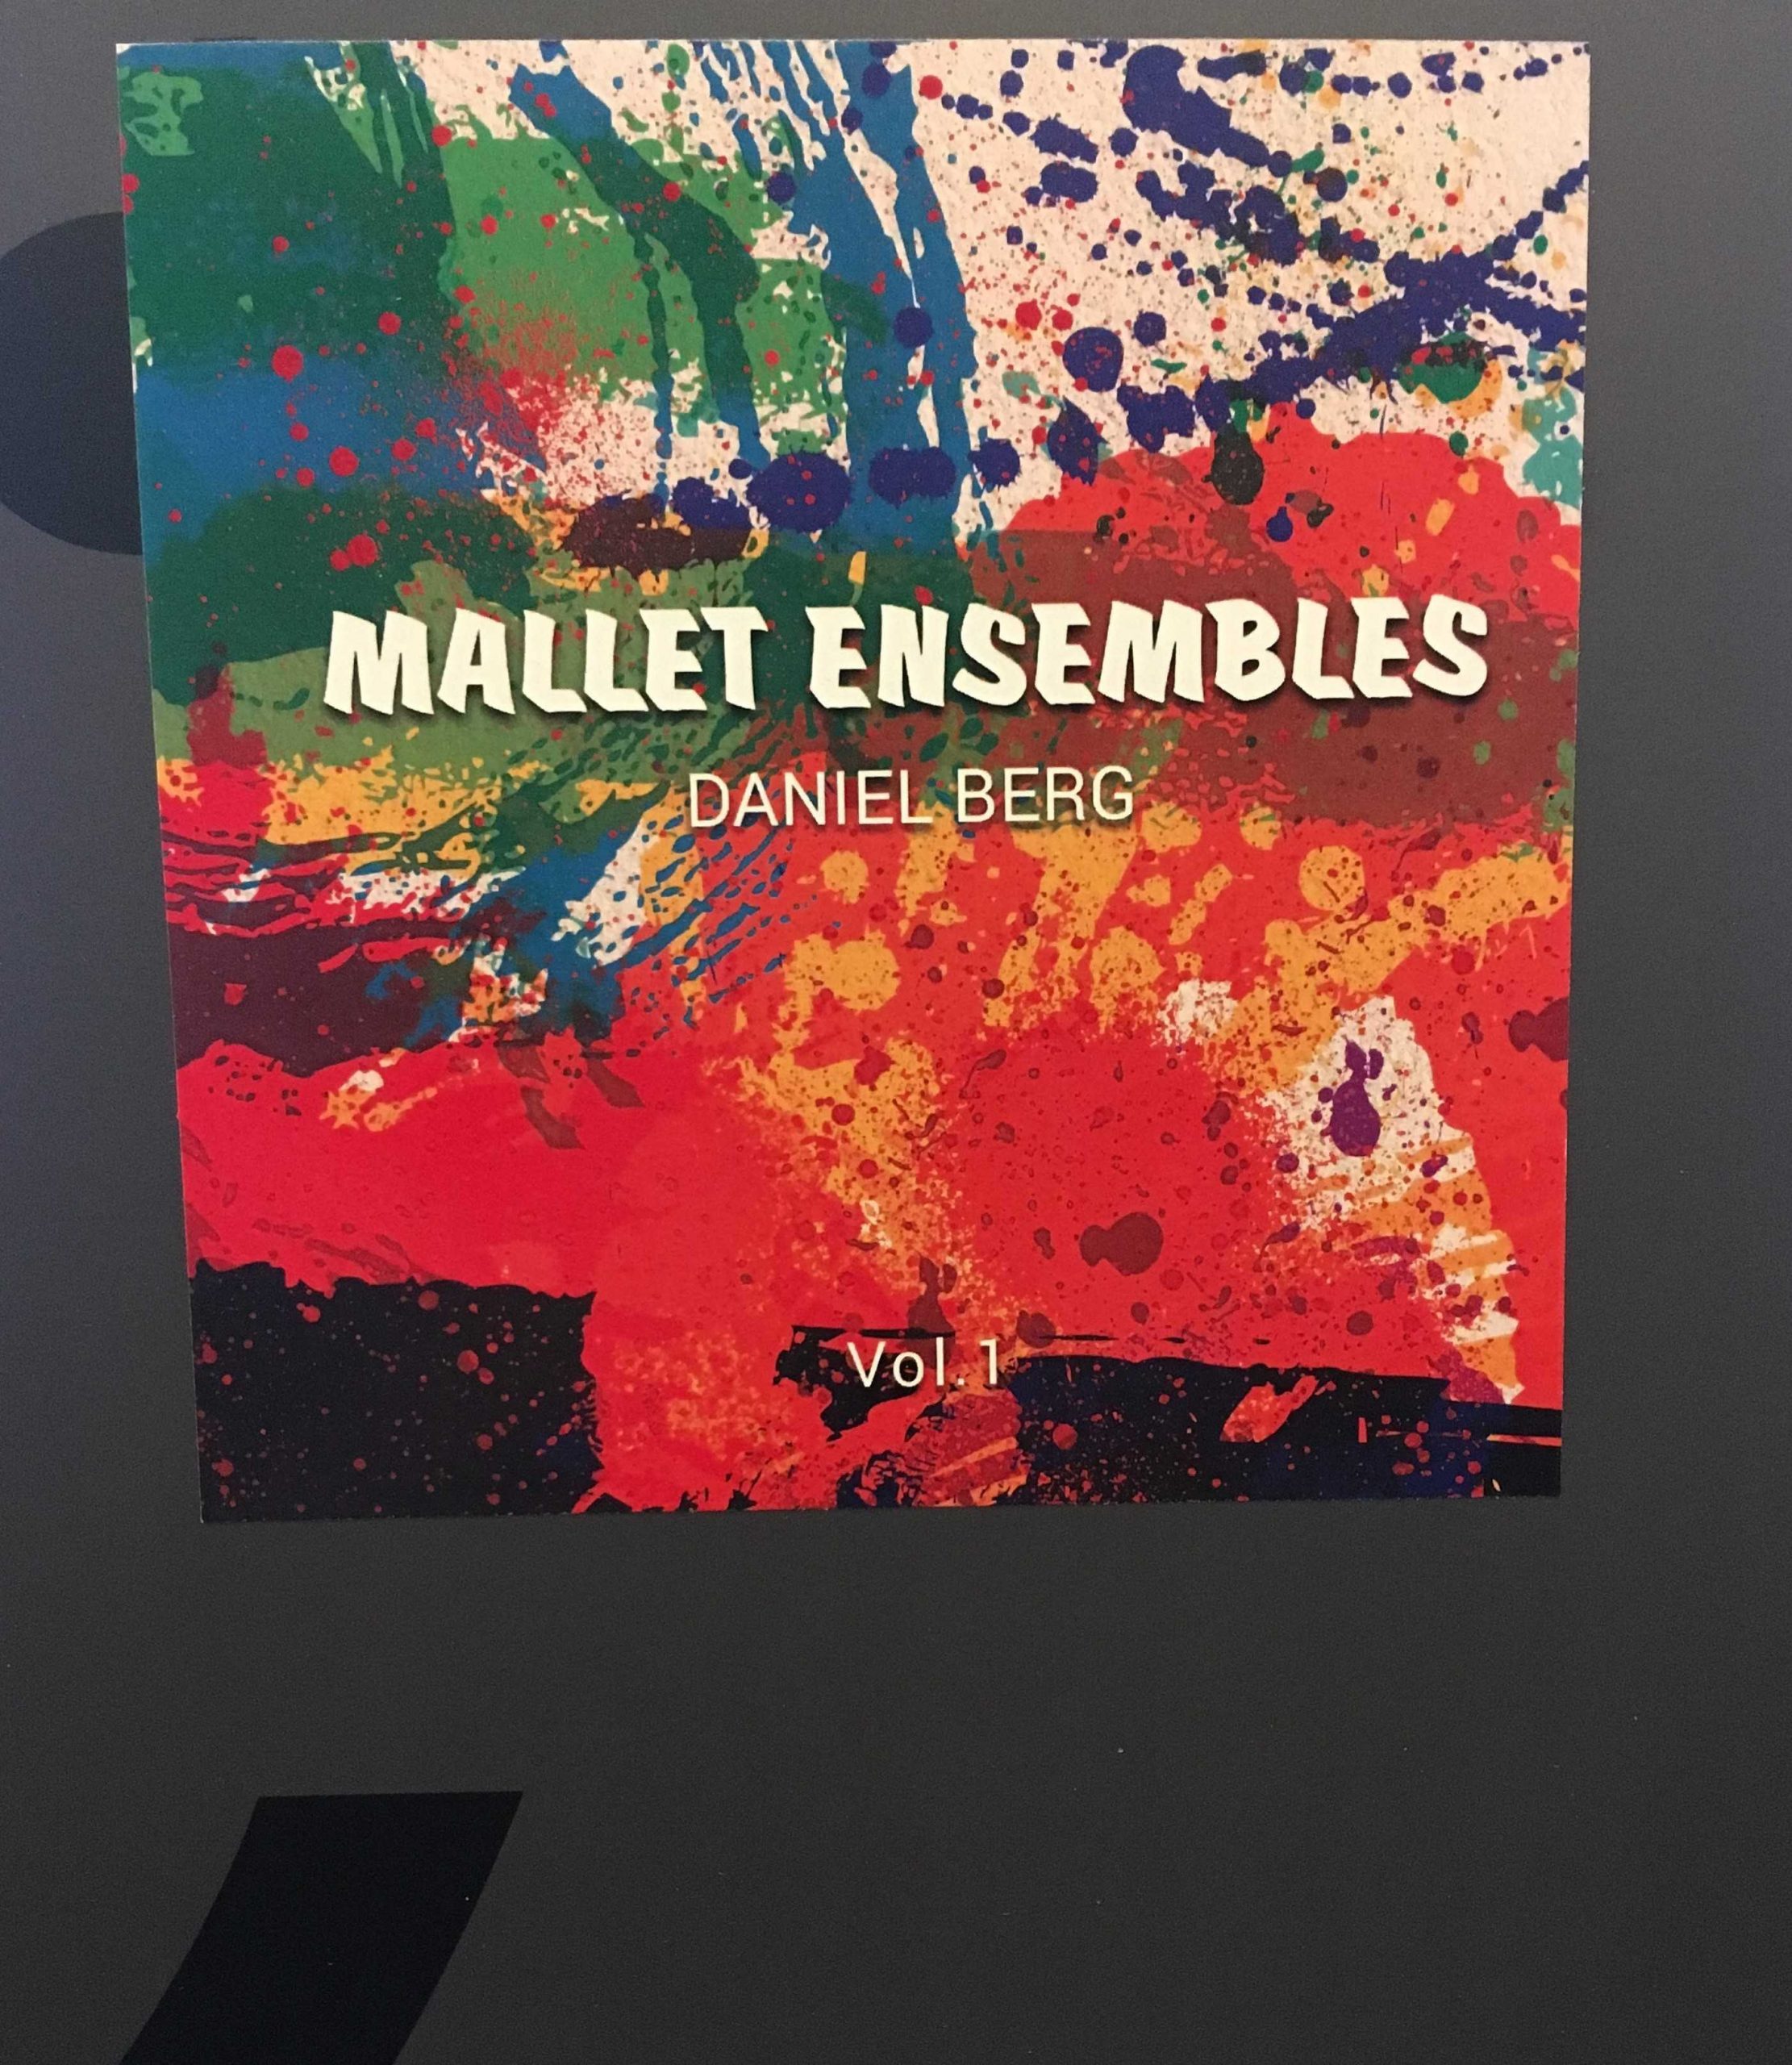 Mallet Ensembles Vol. 1 by Daniel Berg